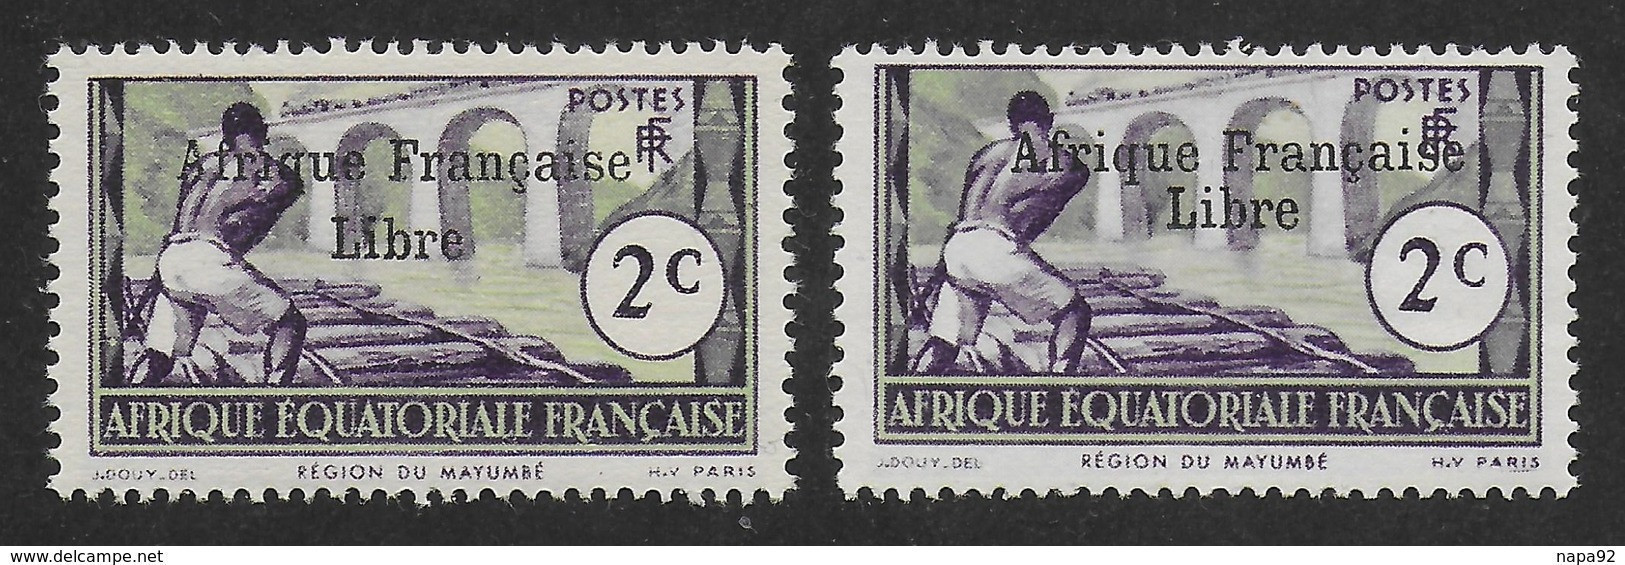 AFRIQUE EQUATORIALE FRANCAISE - AEF - A.E.F. - 1941 - YT 157** - 2ème TIRAGE - Unused Stamps